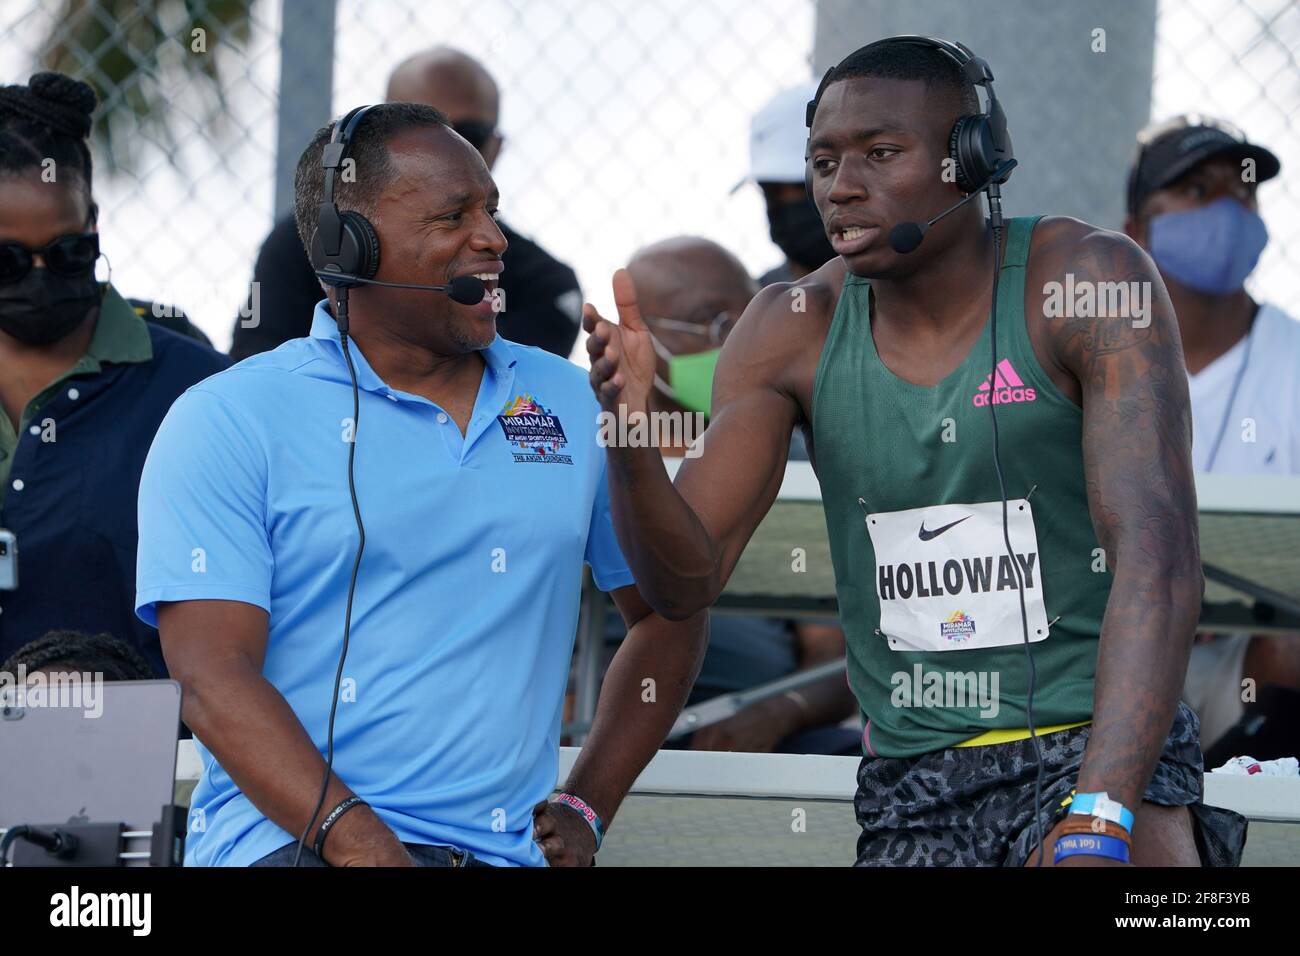 L'emittente sportiva della NBC ATO Boldon (a sinistra) intervista il vincitore di 110m ostacoli Grant Holloway (USA) durante il Miramar Invitational, sabato 10 aprile 2021 Foto Stock